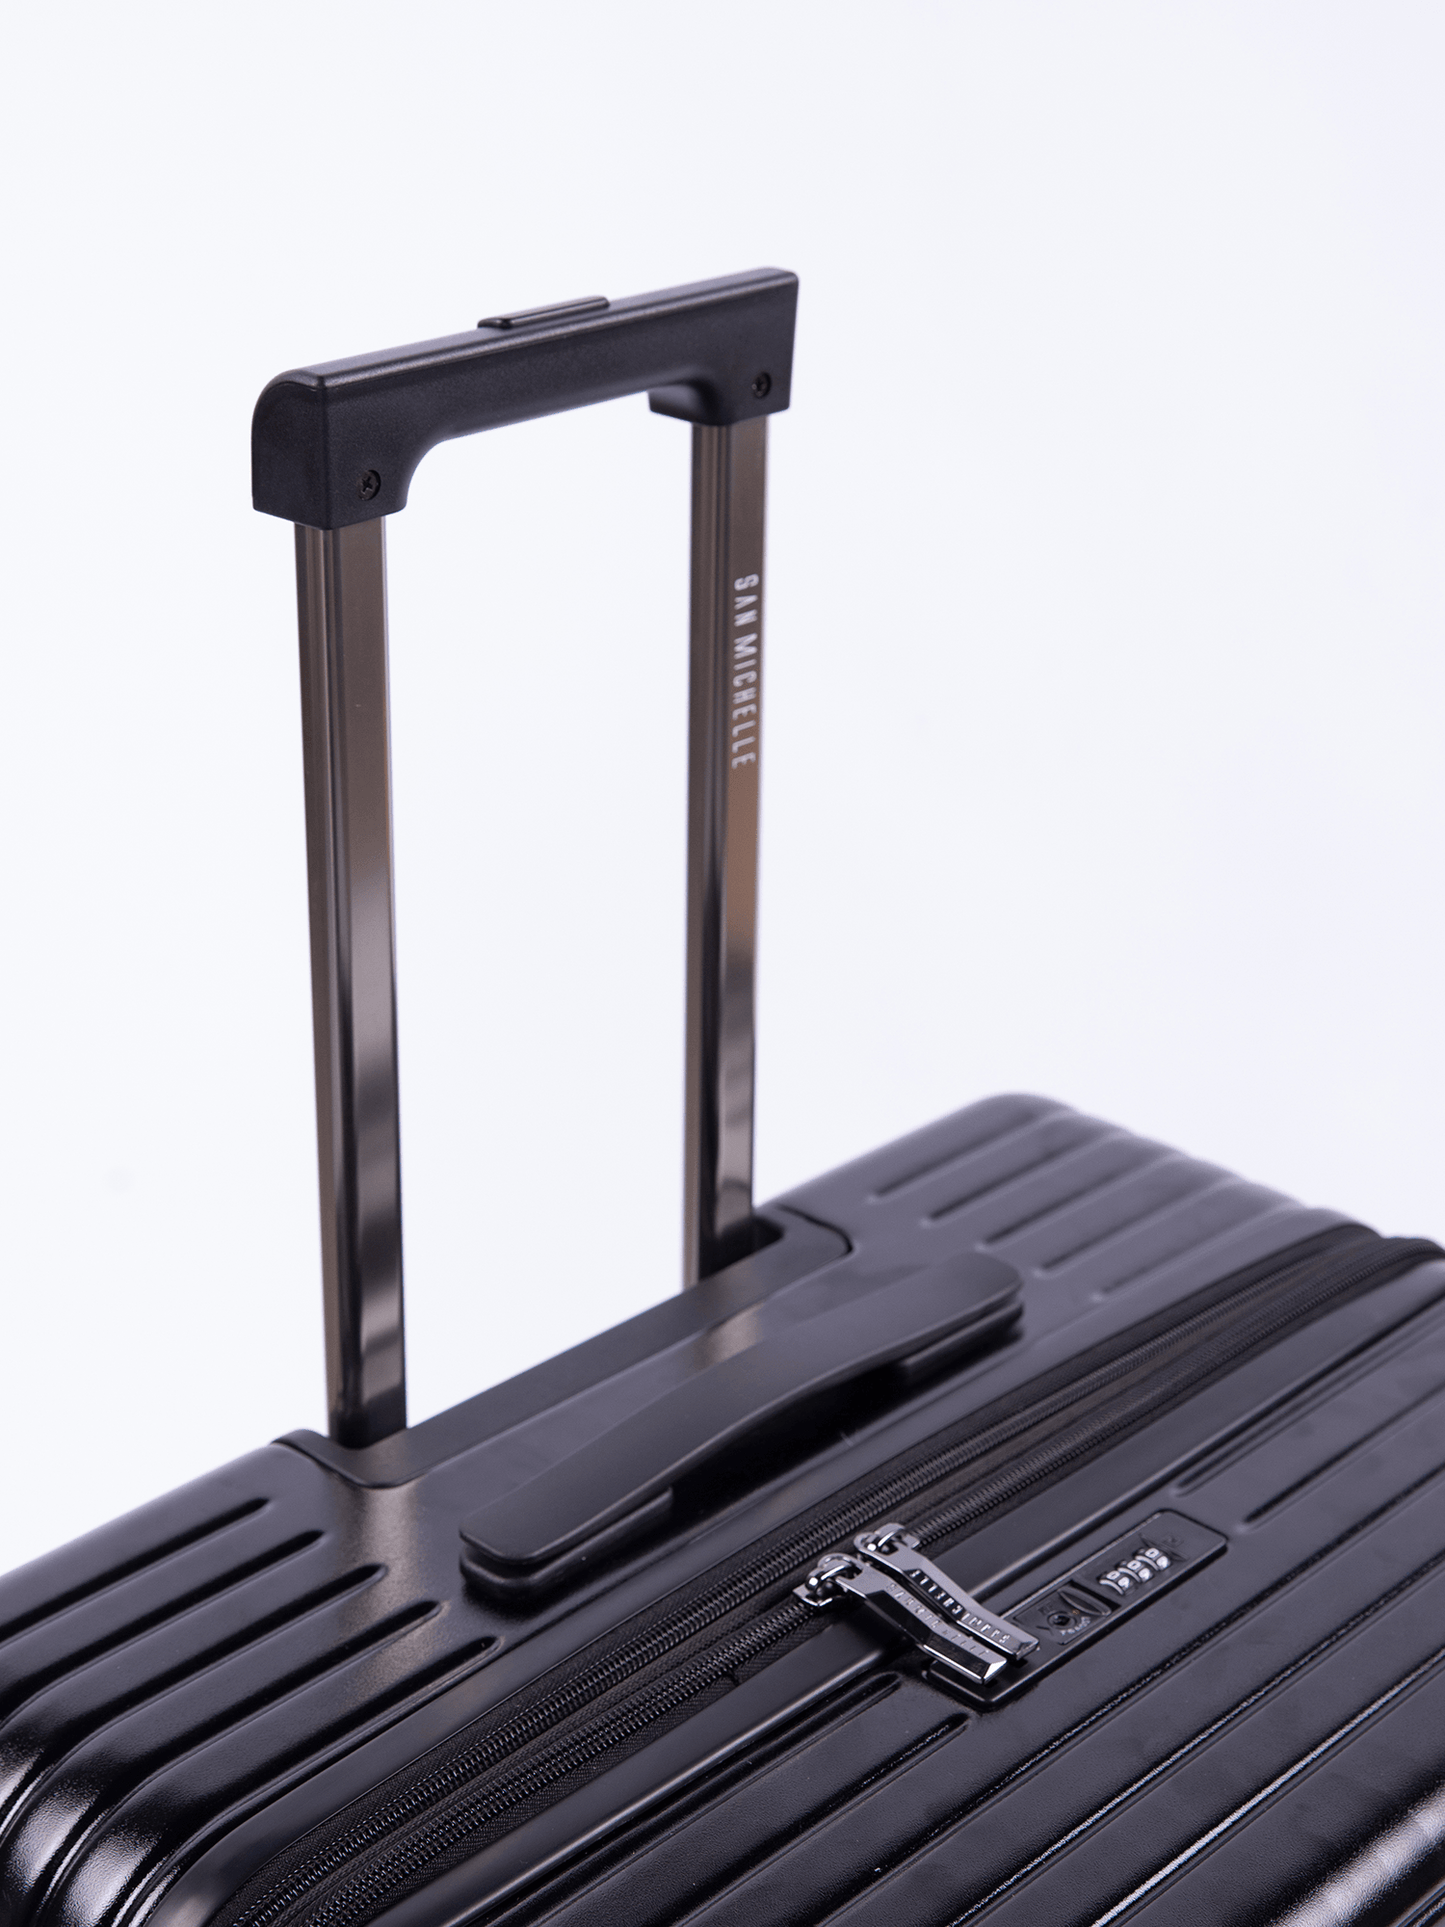 San Michelle Explorer 65cm Suitcase - San Michelle Bags suitcase nz